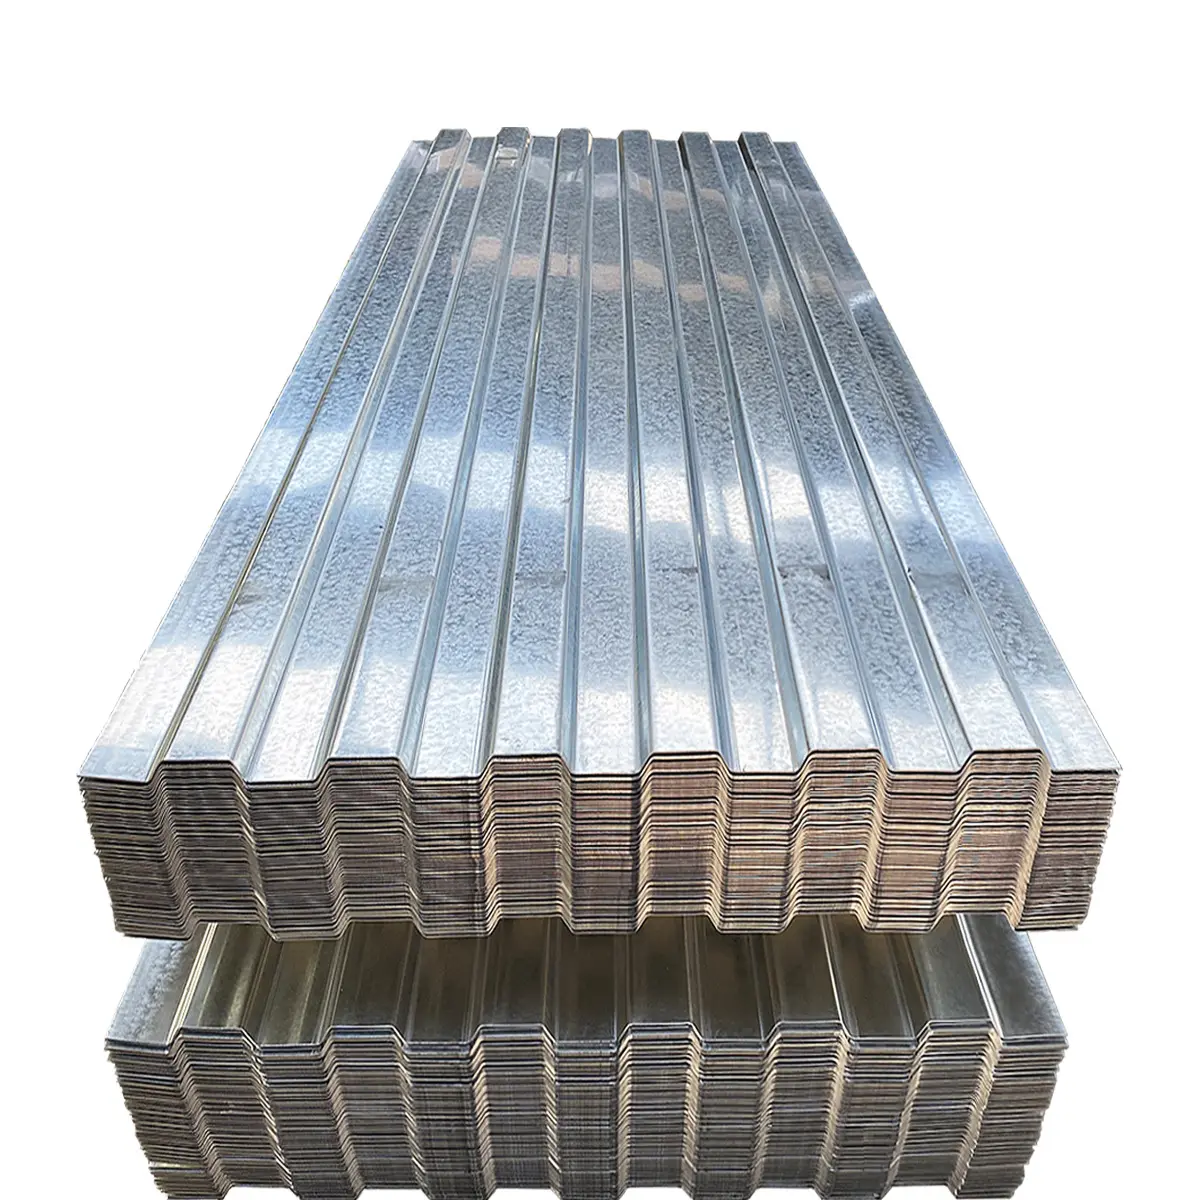 Preço Chapa de zinco para telhados 4x8 chapa ondulada galvanizada chapa metálica chapa de aço galvanizado chapas de aço inoxidável revestidas galvanizadas 7 dias